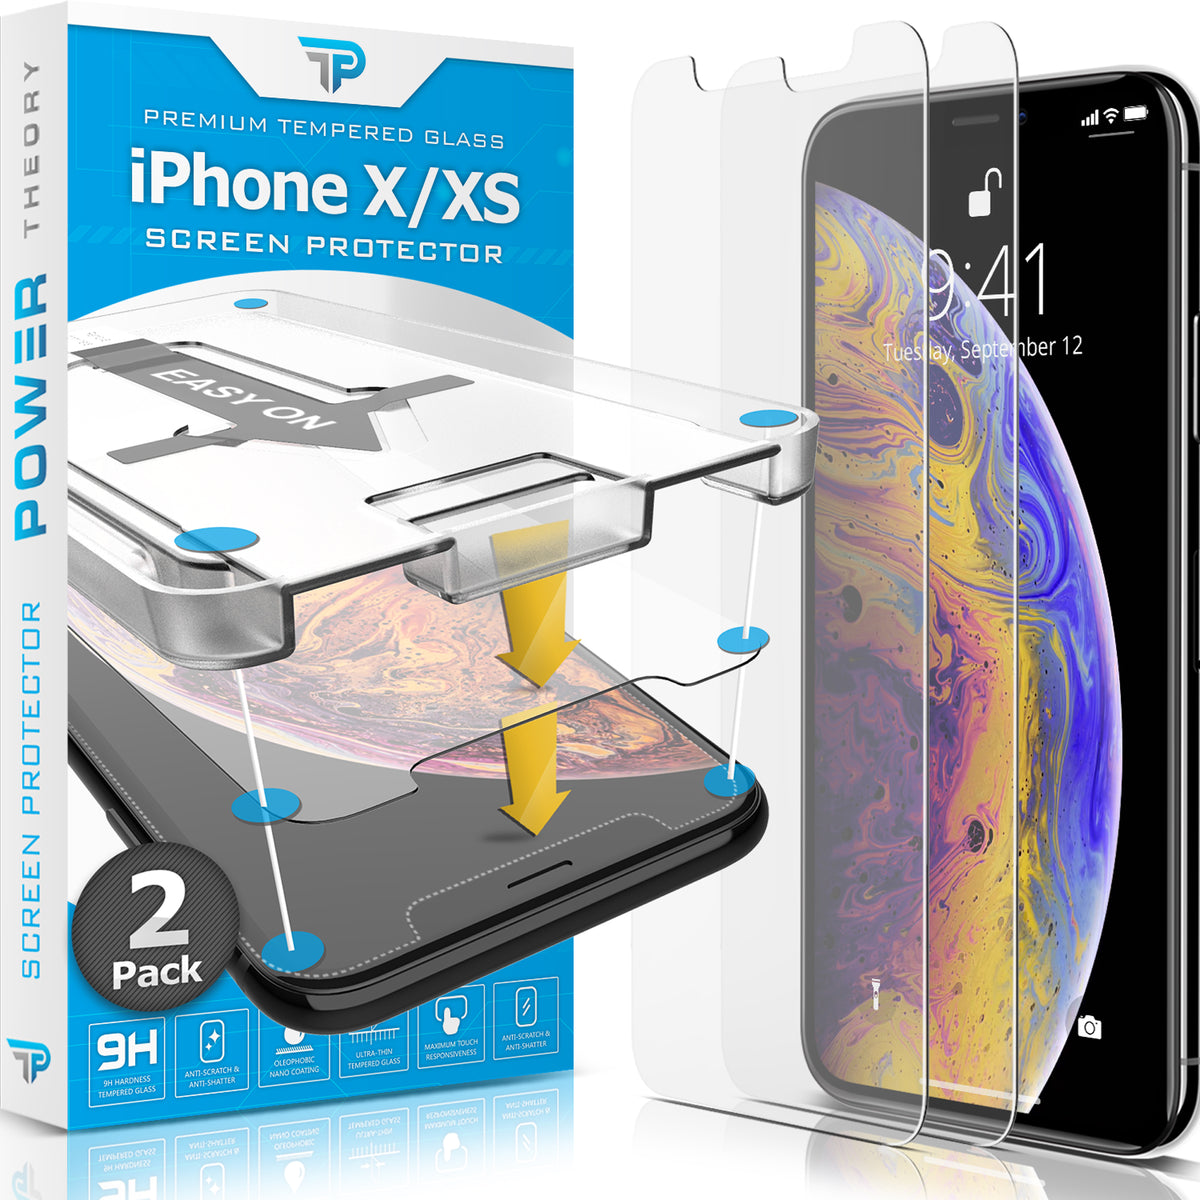 Power Theory Schutzfolie kompatibel mit iPhone XS/iPhone X [2 Stück] - mit Schablone, Glas Folie, Displayschutzfolie, Schutzglas Cover